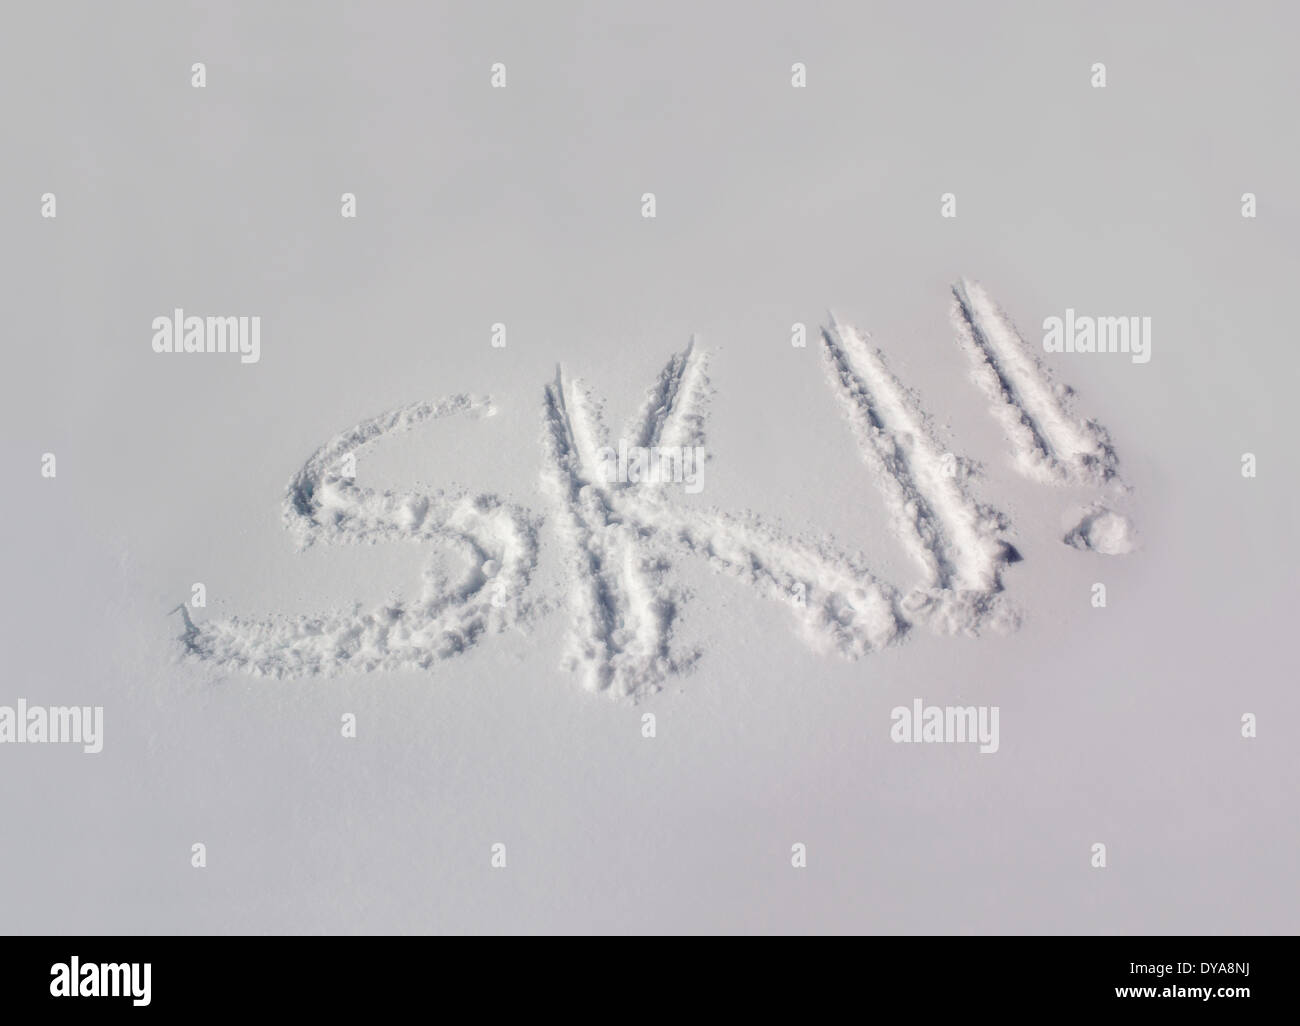 Das Wort "SKI" in einem unmarkierten Bank Schnee geschrieben Stockfoto